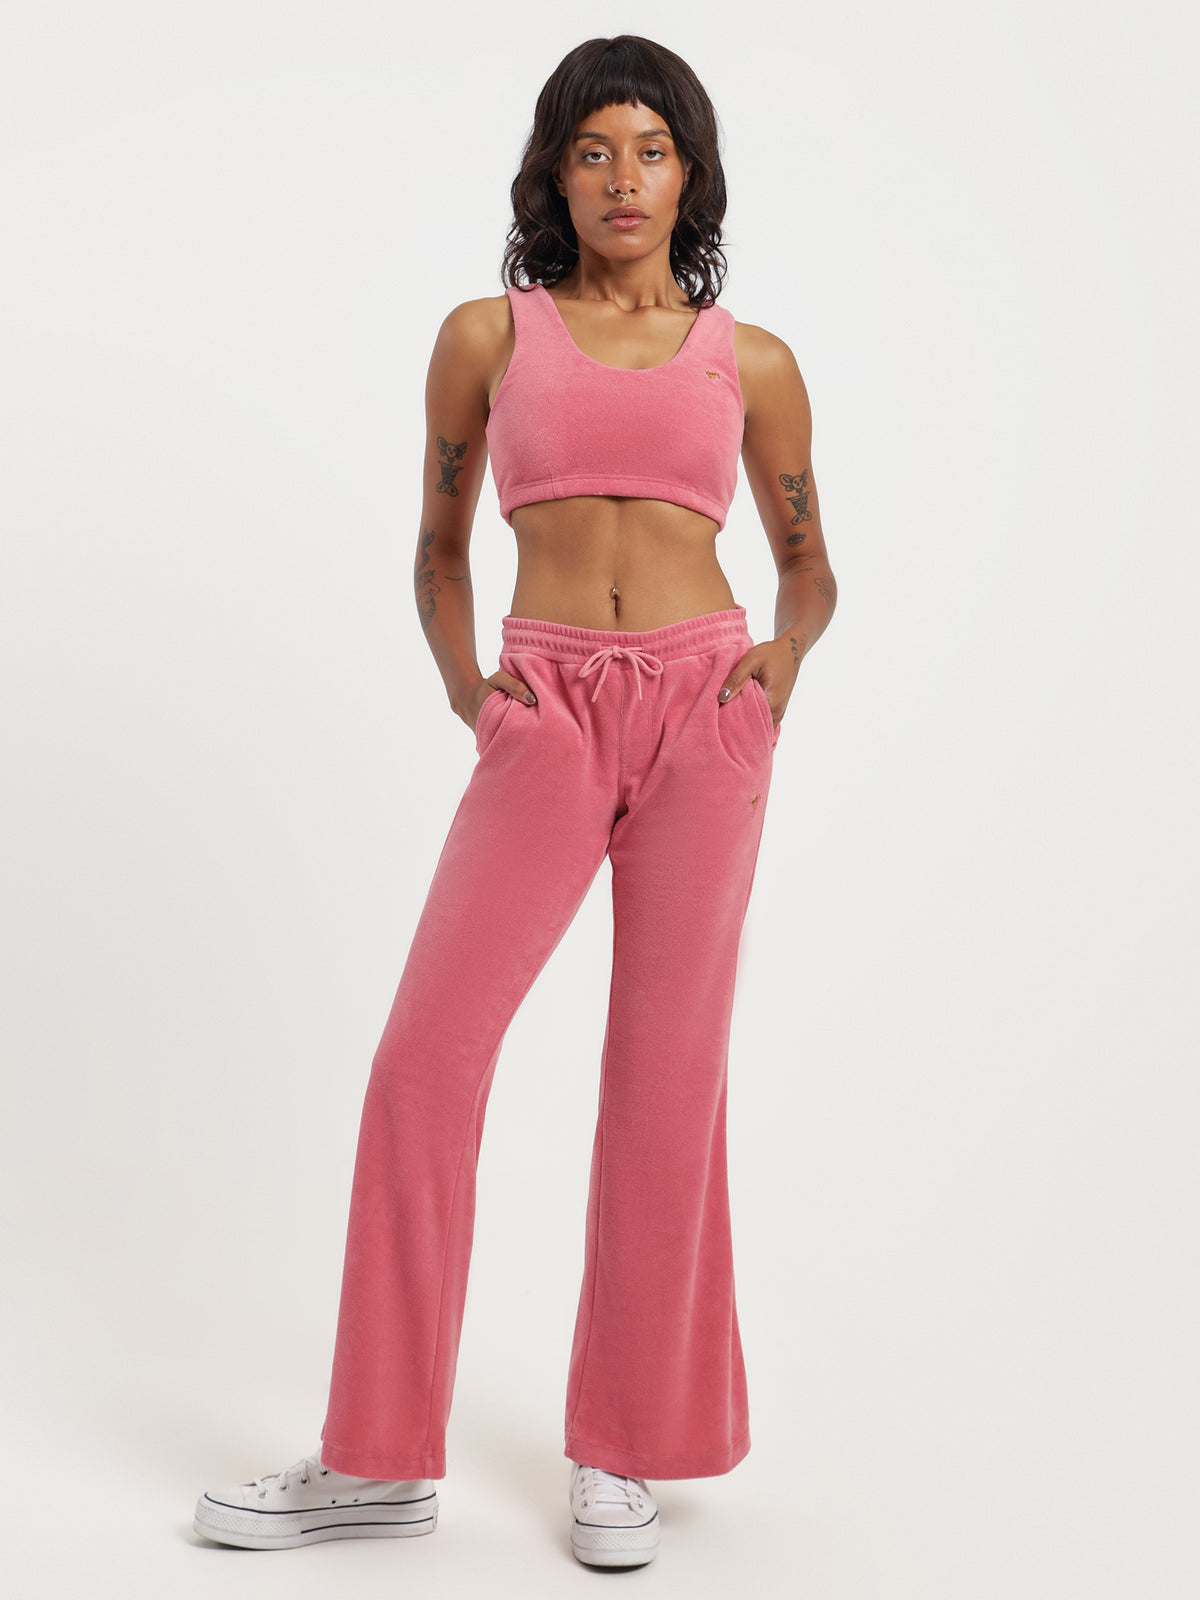 Paloma Terry Crop Bralette in Pink Lemonade